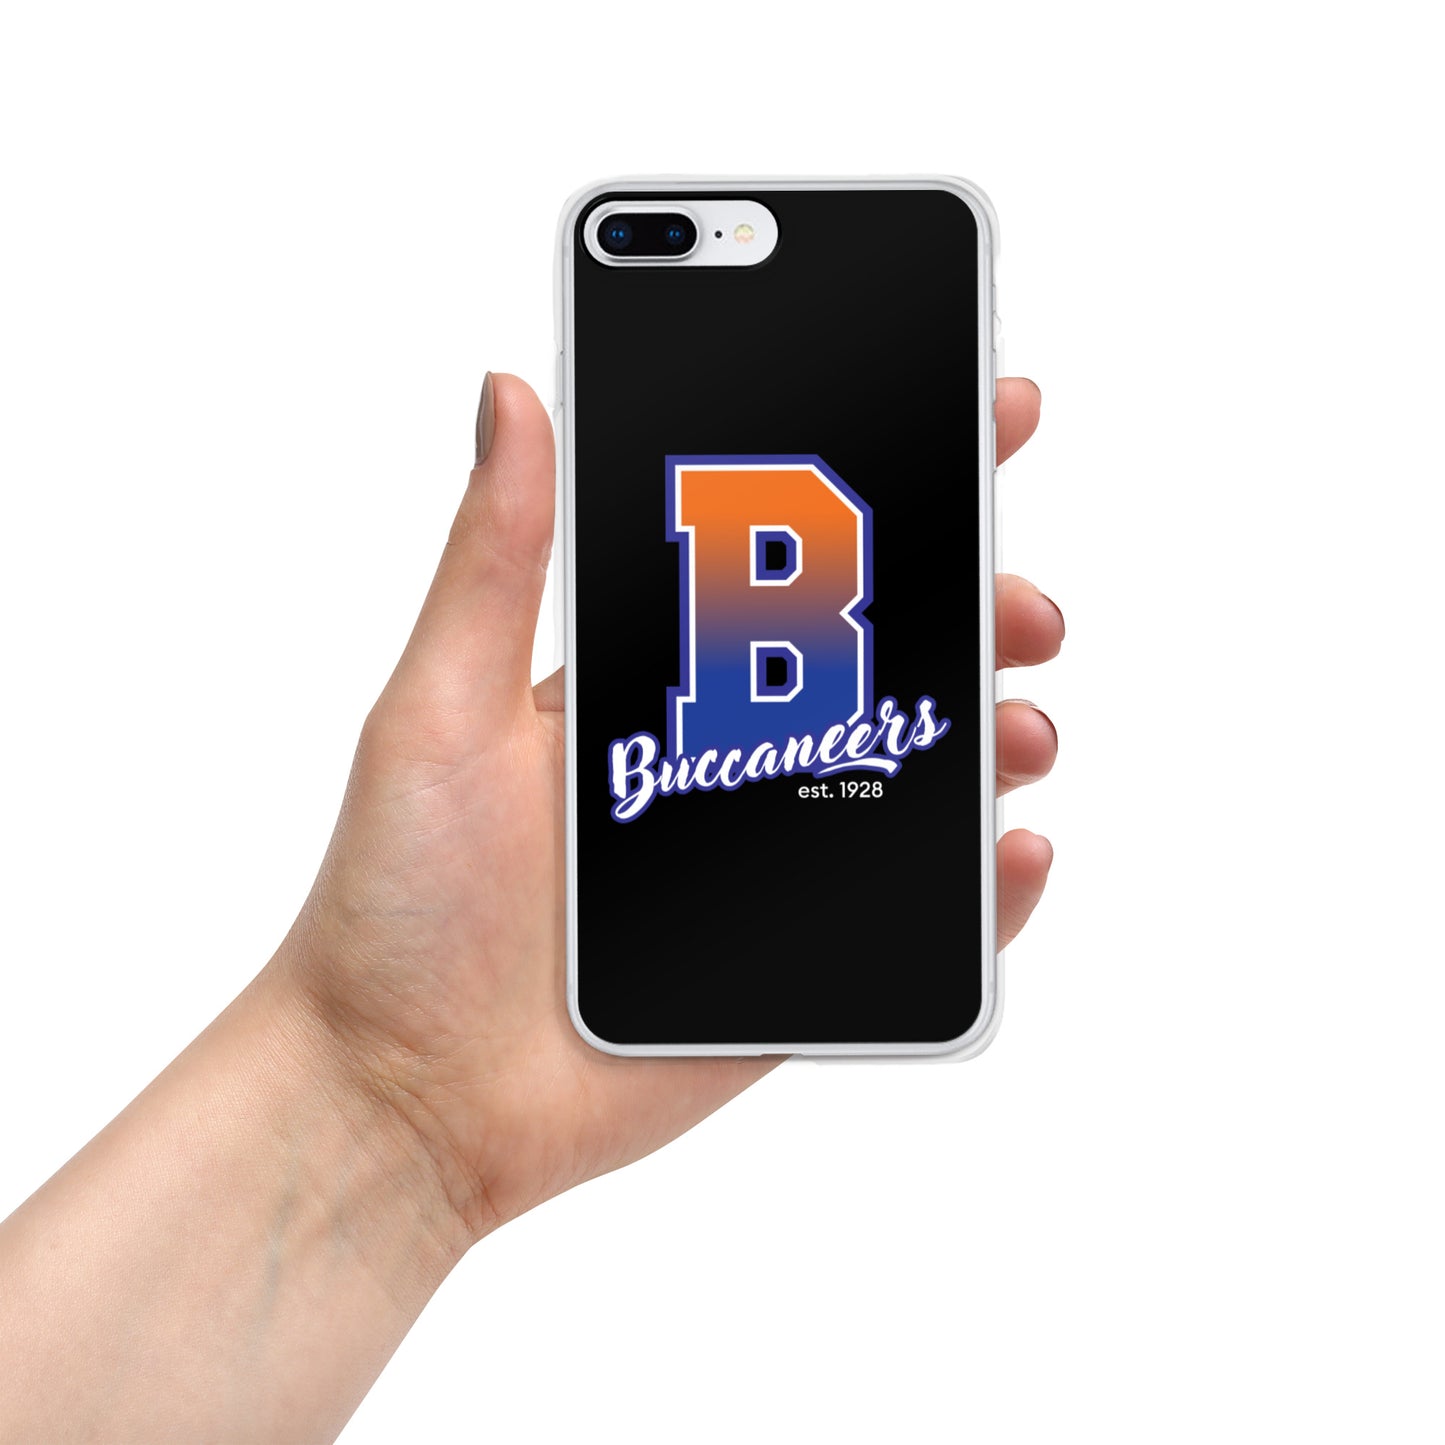 Buccaneers iPhone Case